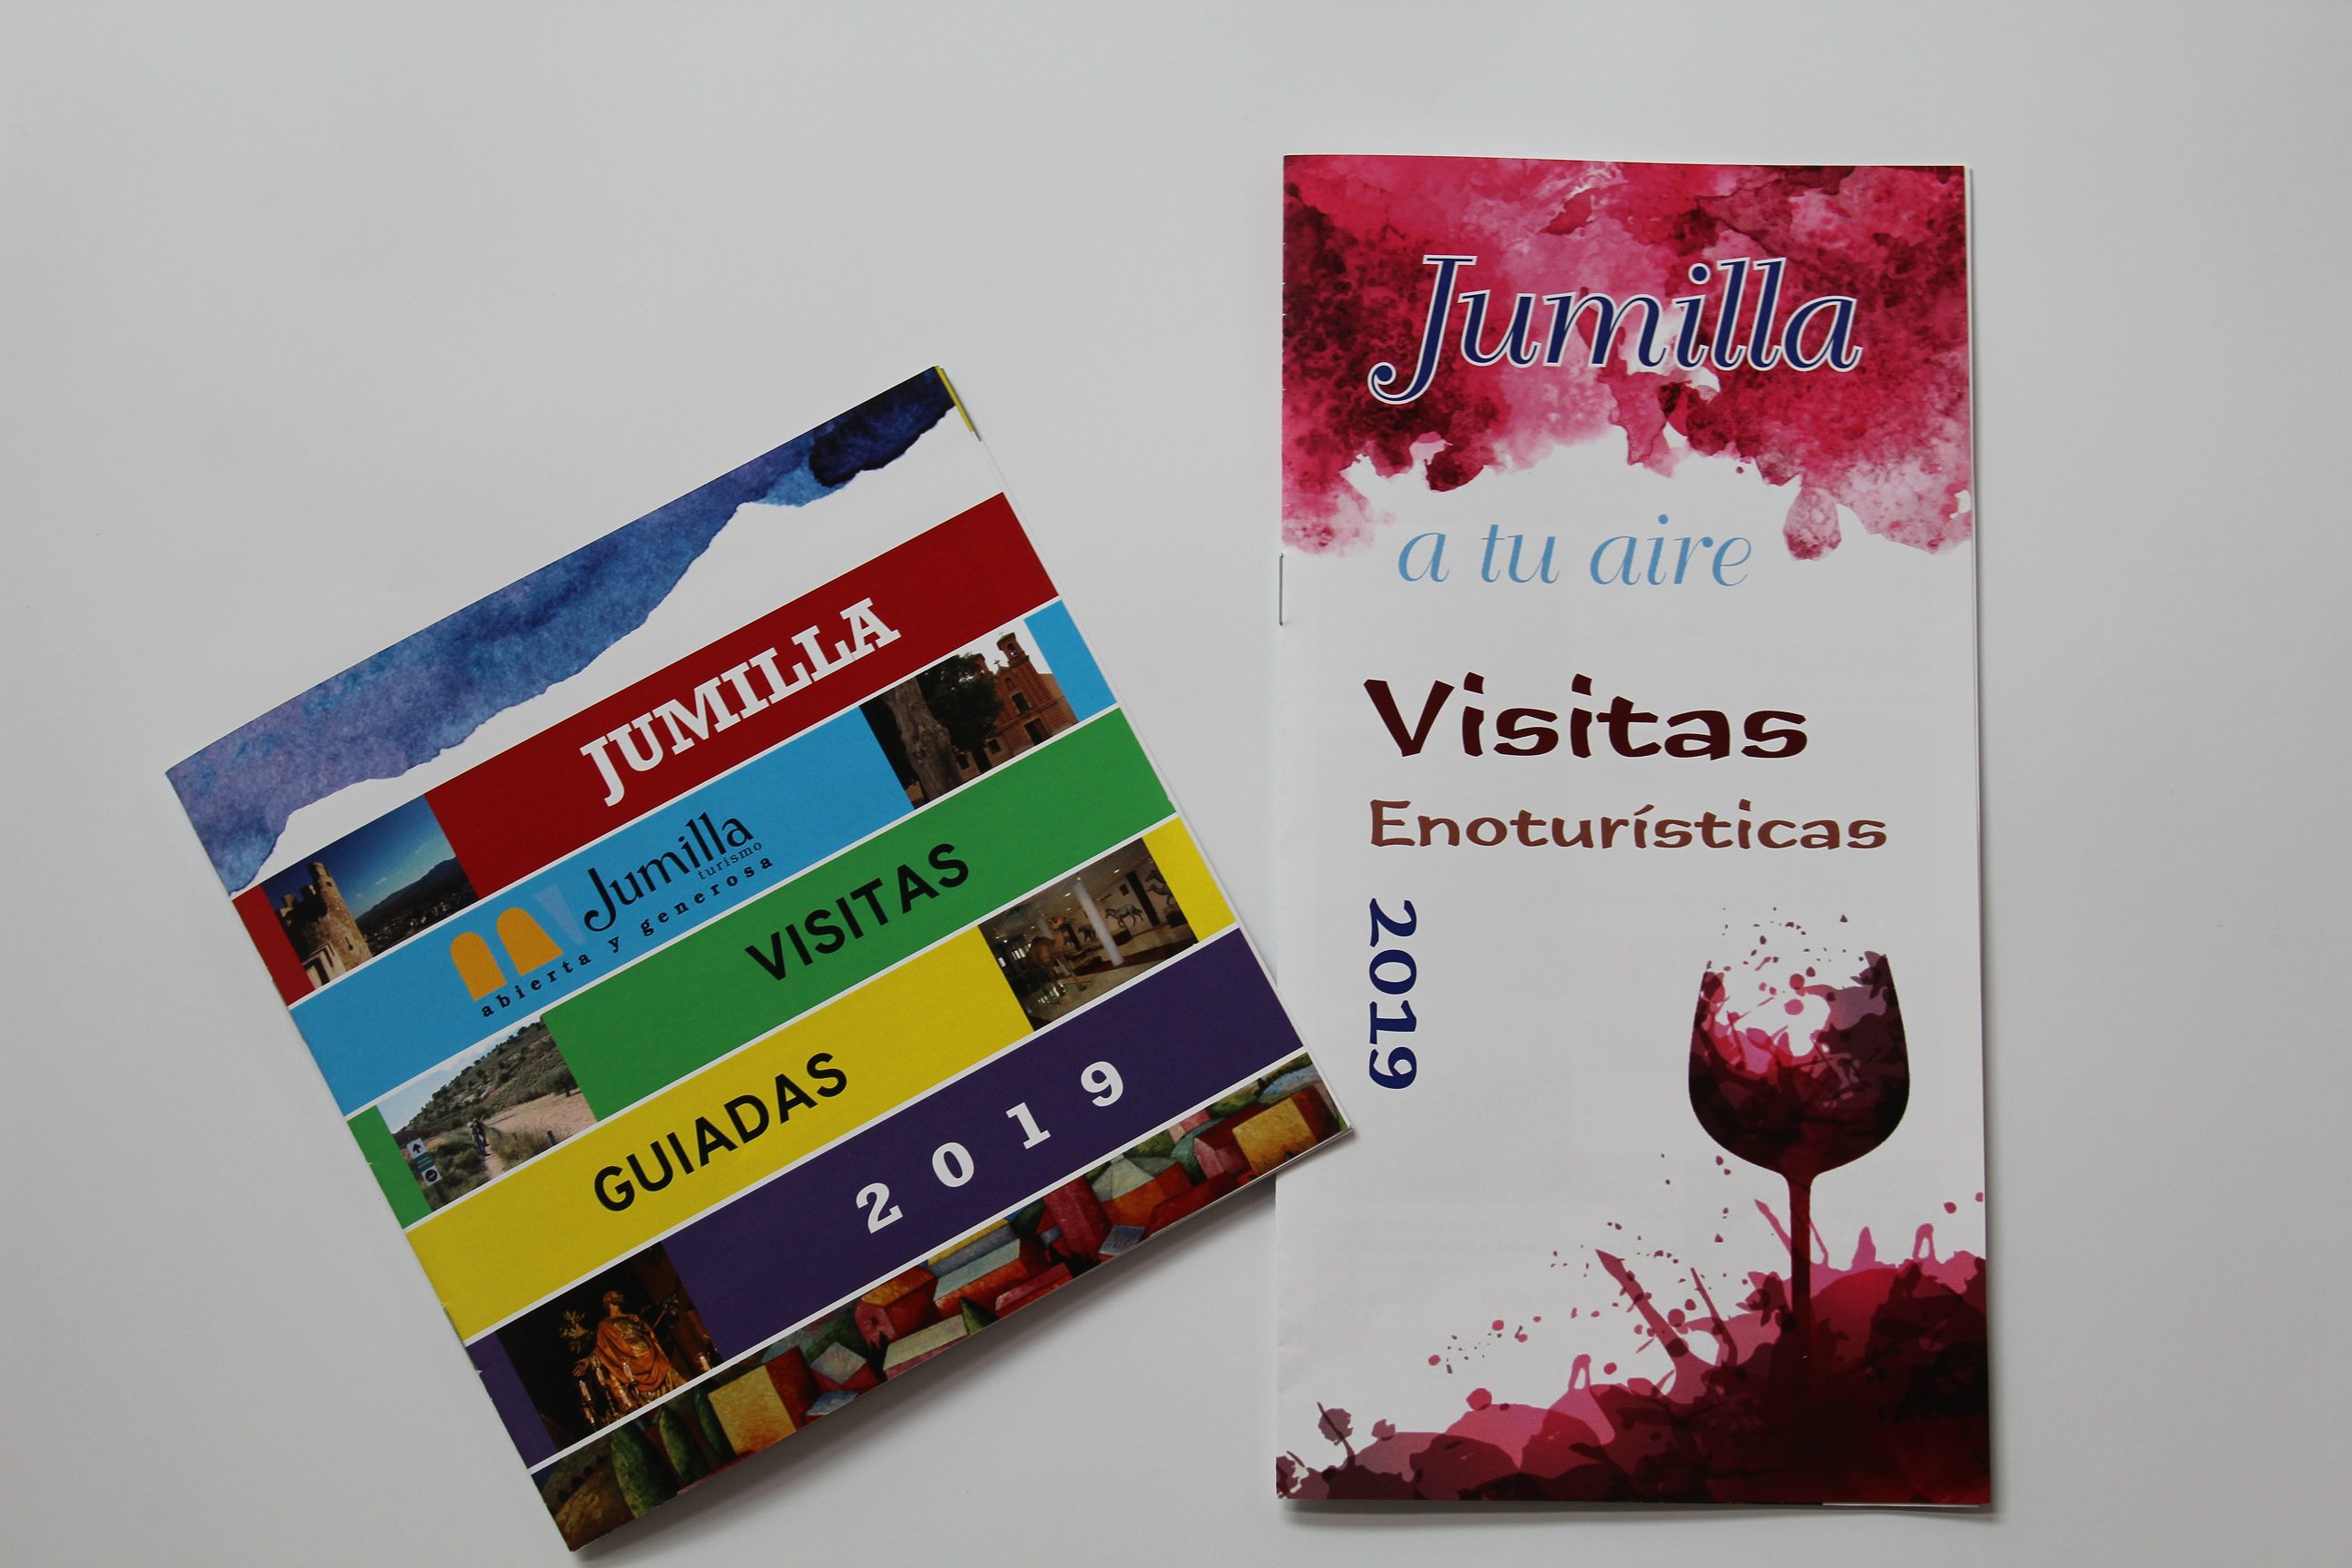 Turismo edita nuevos folletos sobre visitas guiadas y de enoturismo en el municipio